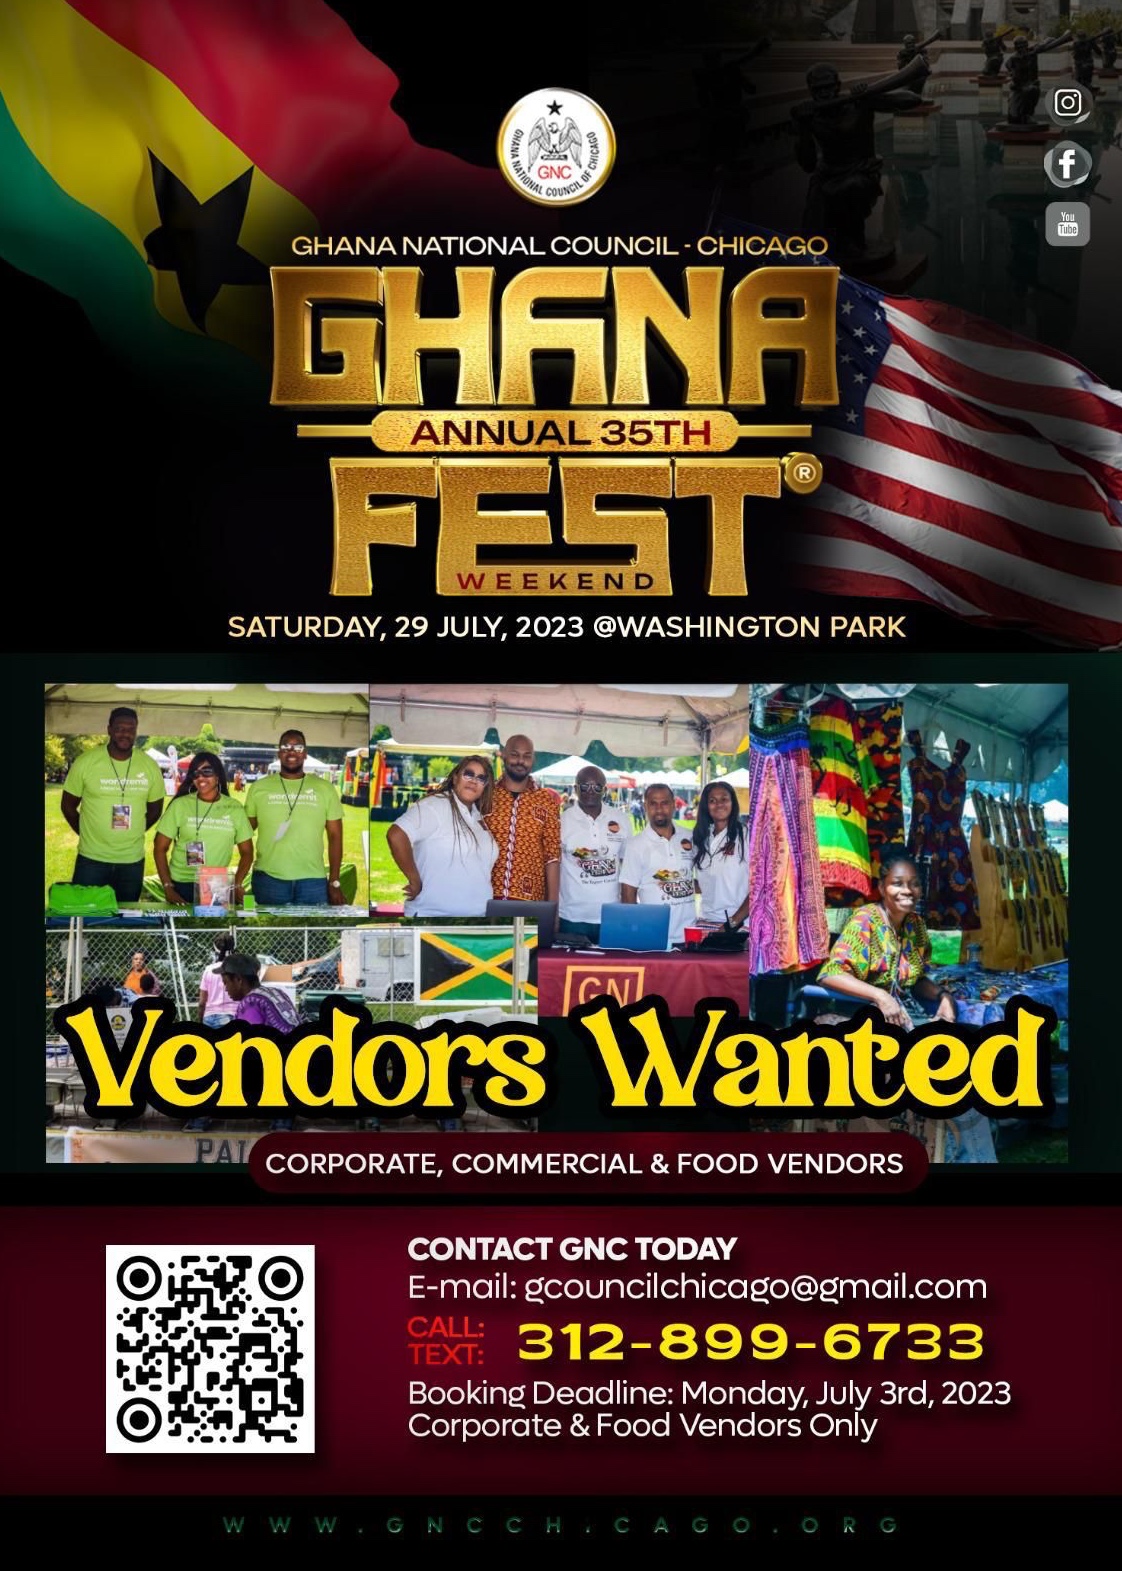 Vendor Registration GhanaFest Chicago 2023 at Washington Park, Chicago